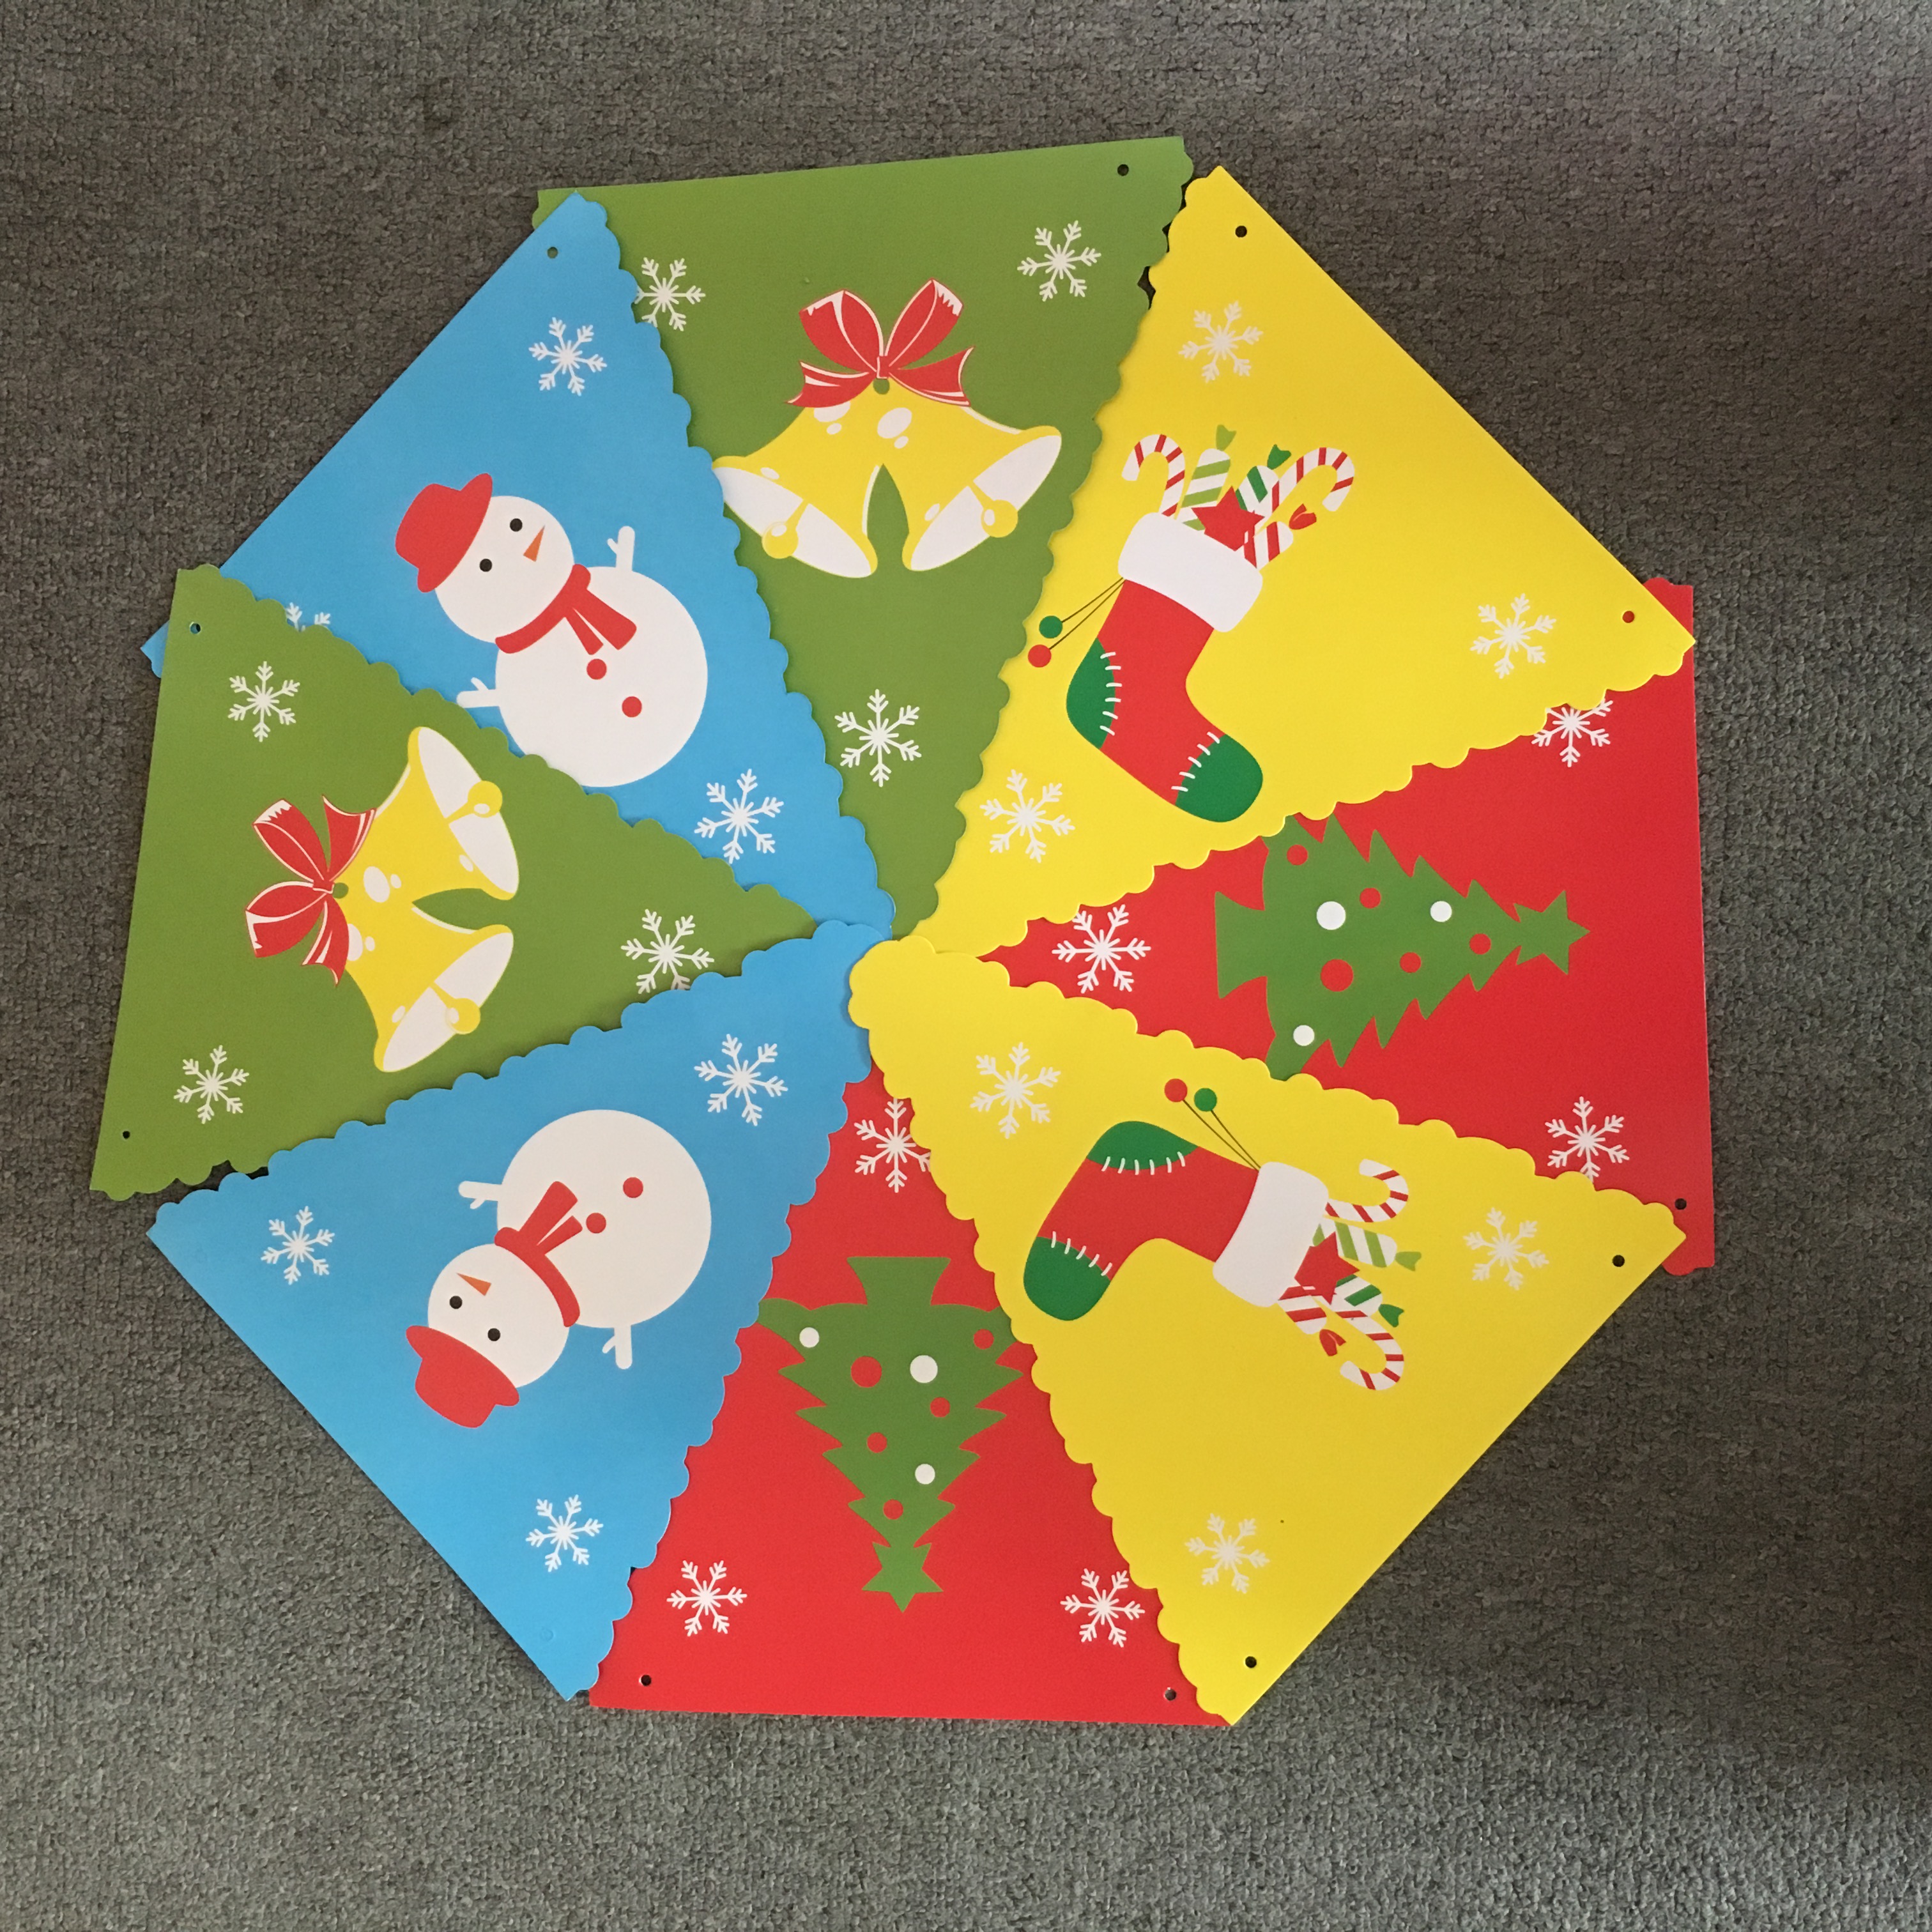 圣诞树卡纸挂件挂饰挂旗派对装扮圣诞节装饰品